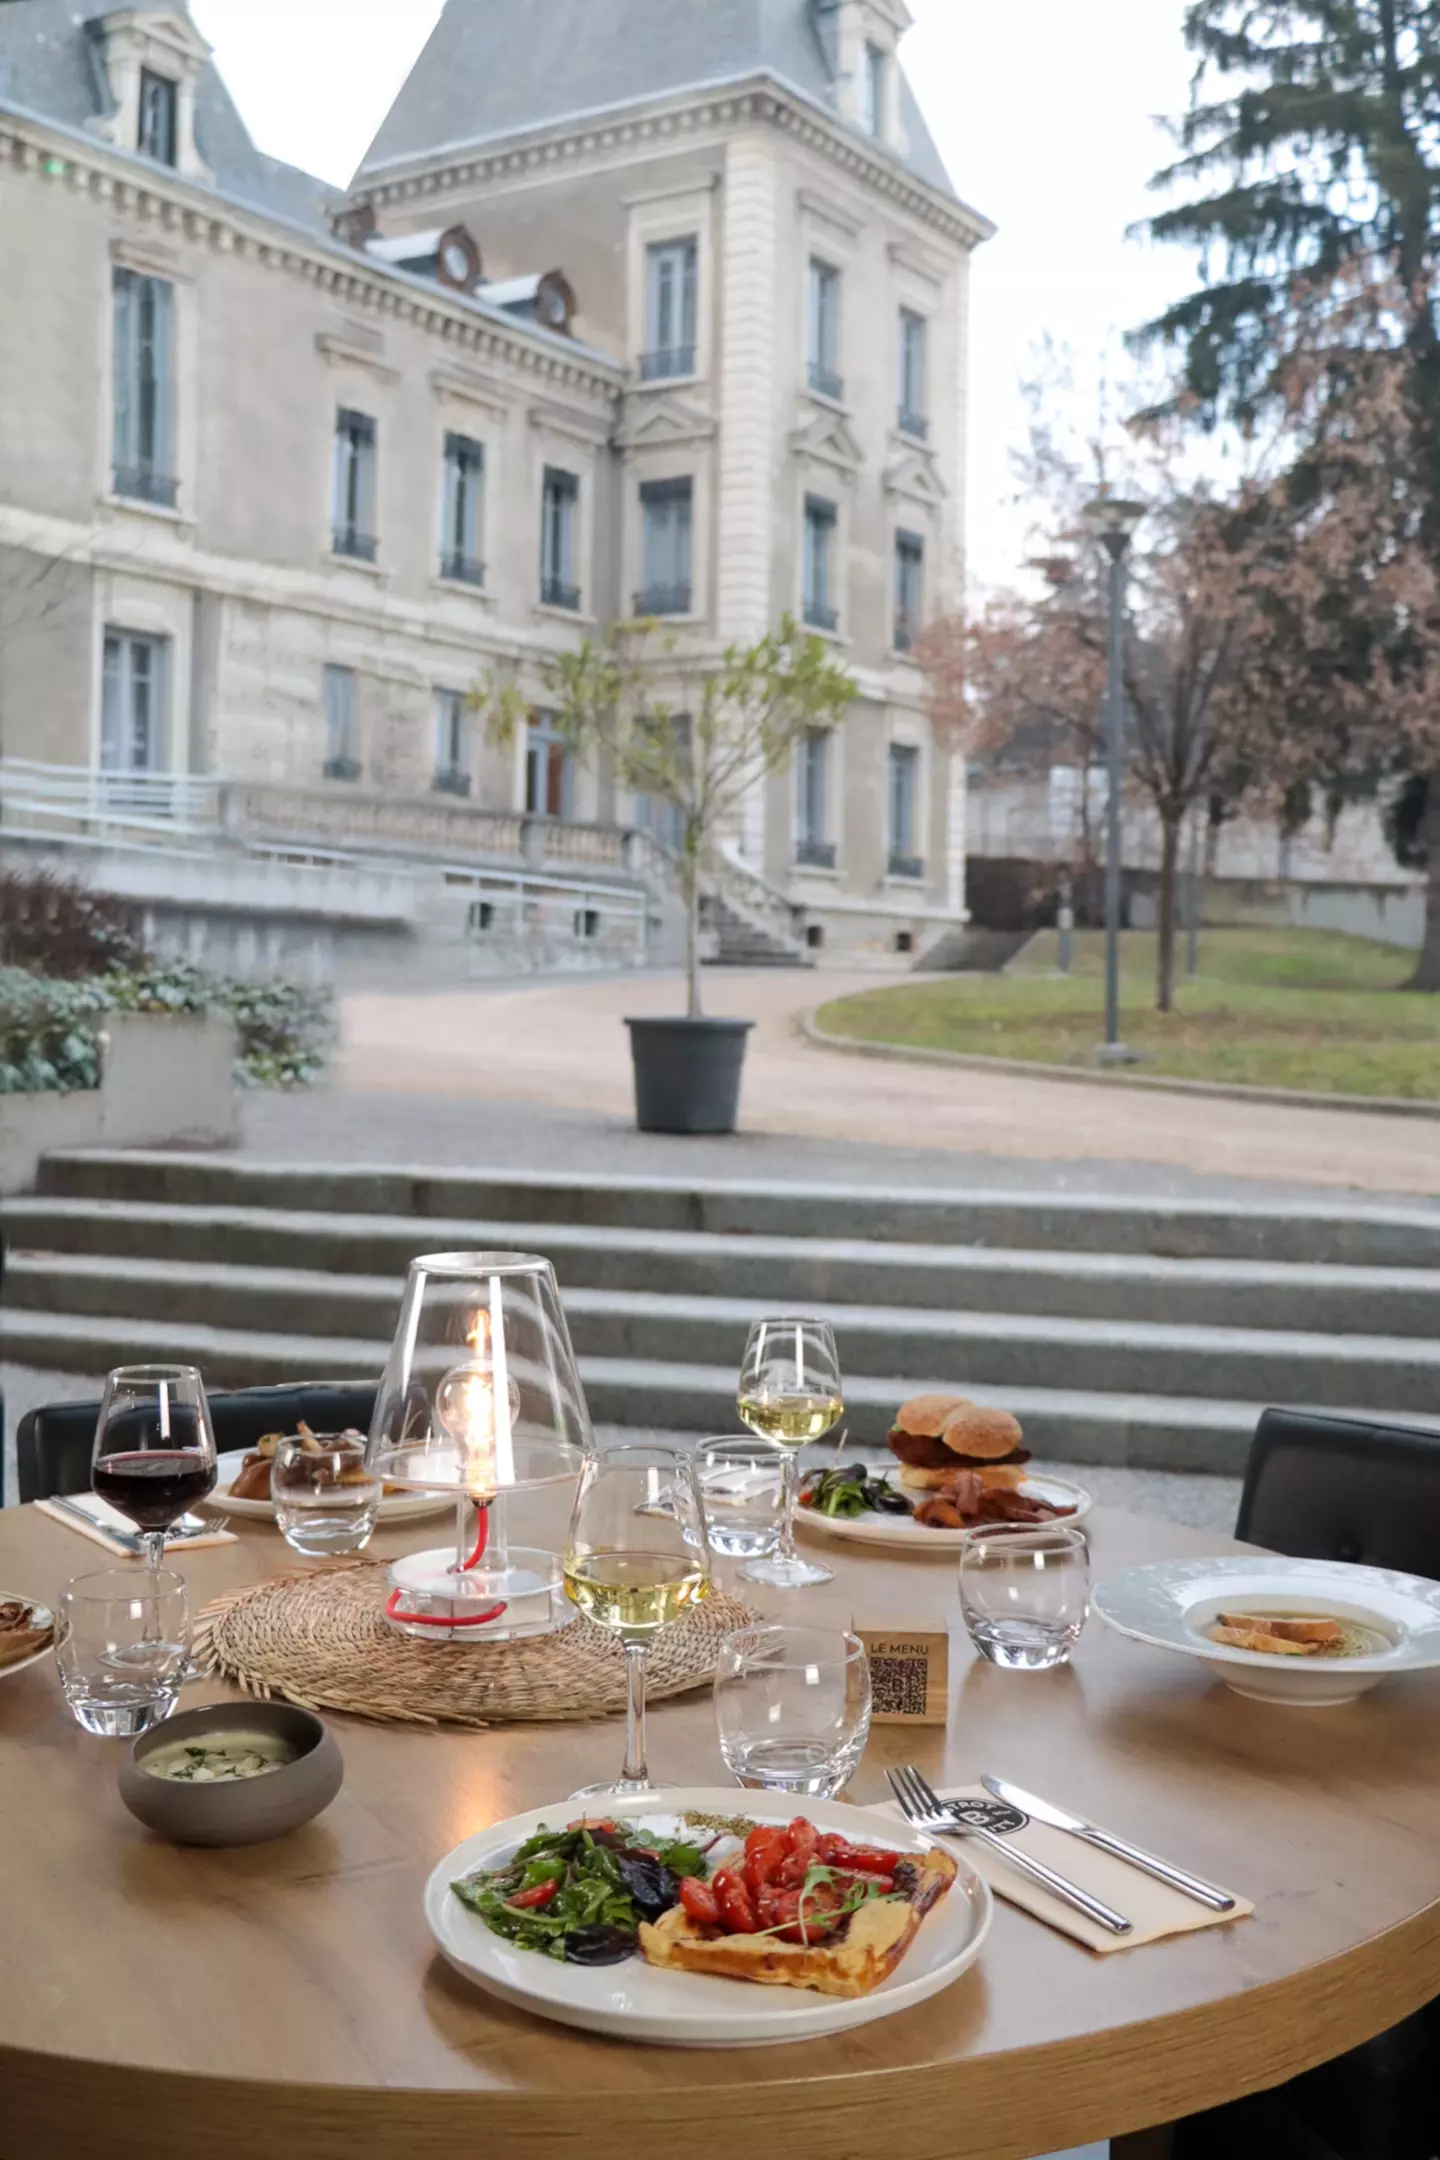 Vue d'une table de restaurant en terrasse au Bistrot City à Lyon Cité Internationale, dressée avec des assiettes de cuisine gastronomique, des verres de vin rouge et blanc, une lanterne allumée, donnant sur un grand bâtiment classique en arrière-plan.